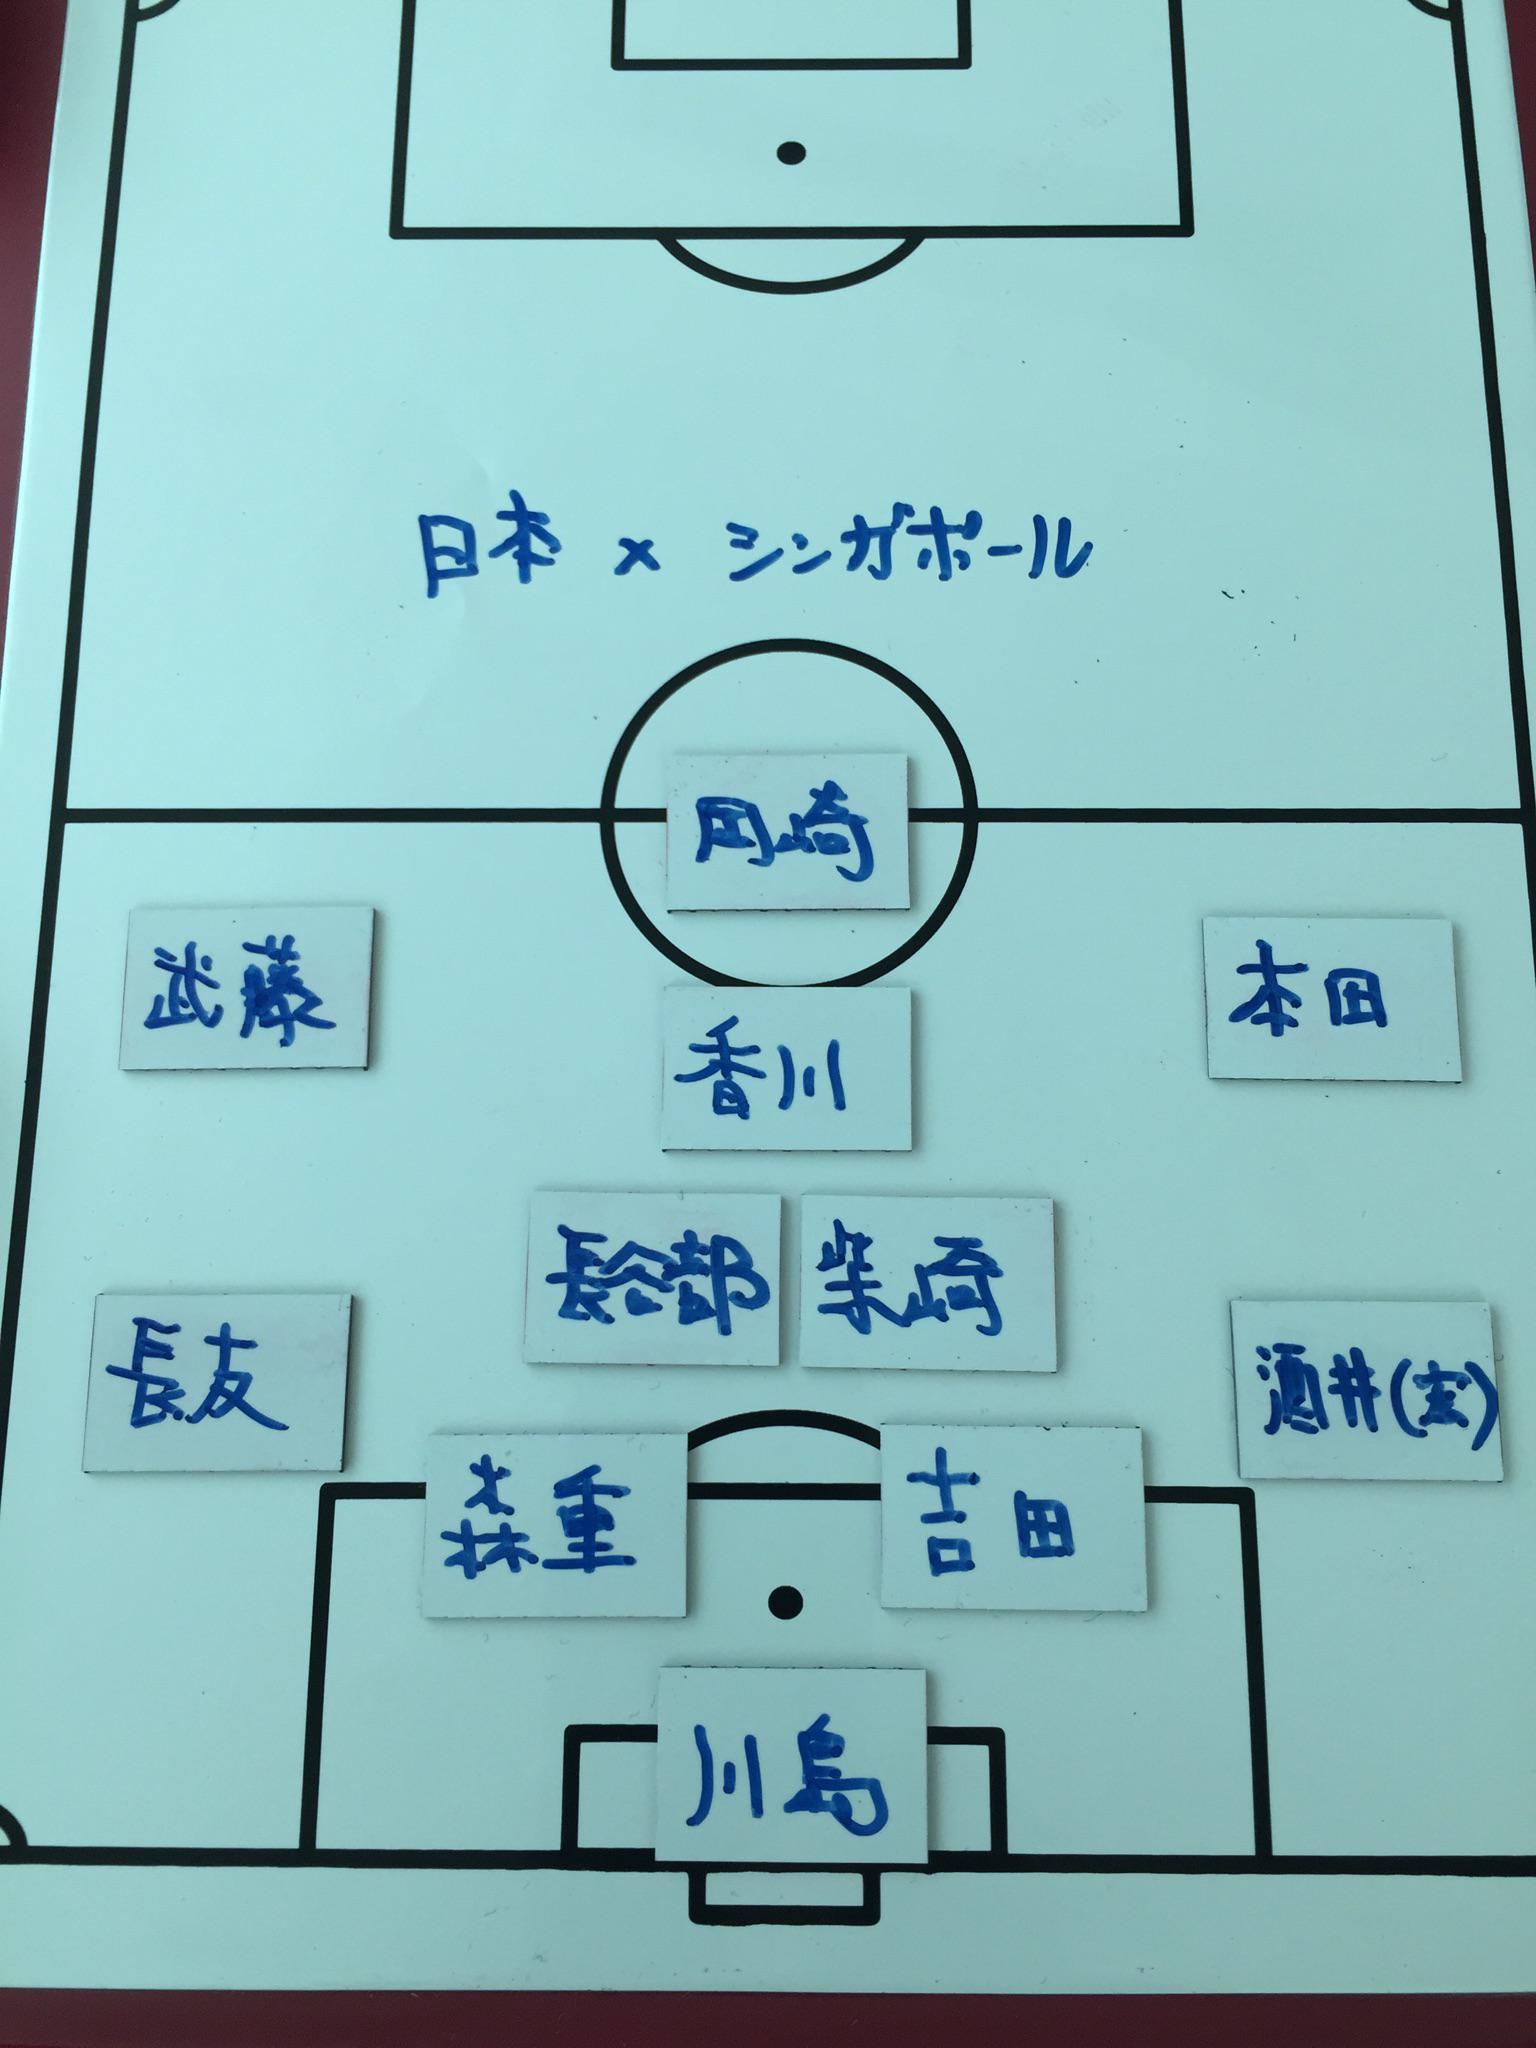 シド ゆうや 日本 シンガポールの予想フォーメーション サッカー日本代表 Http T Co Jajqgf1myk Twitter